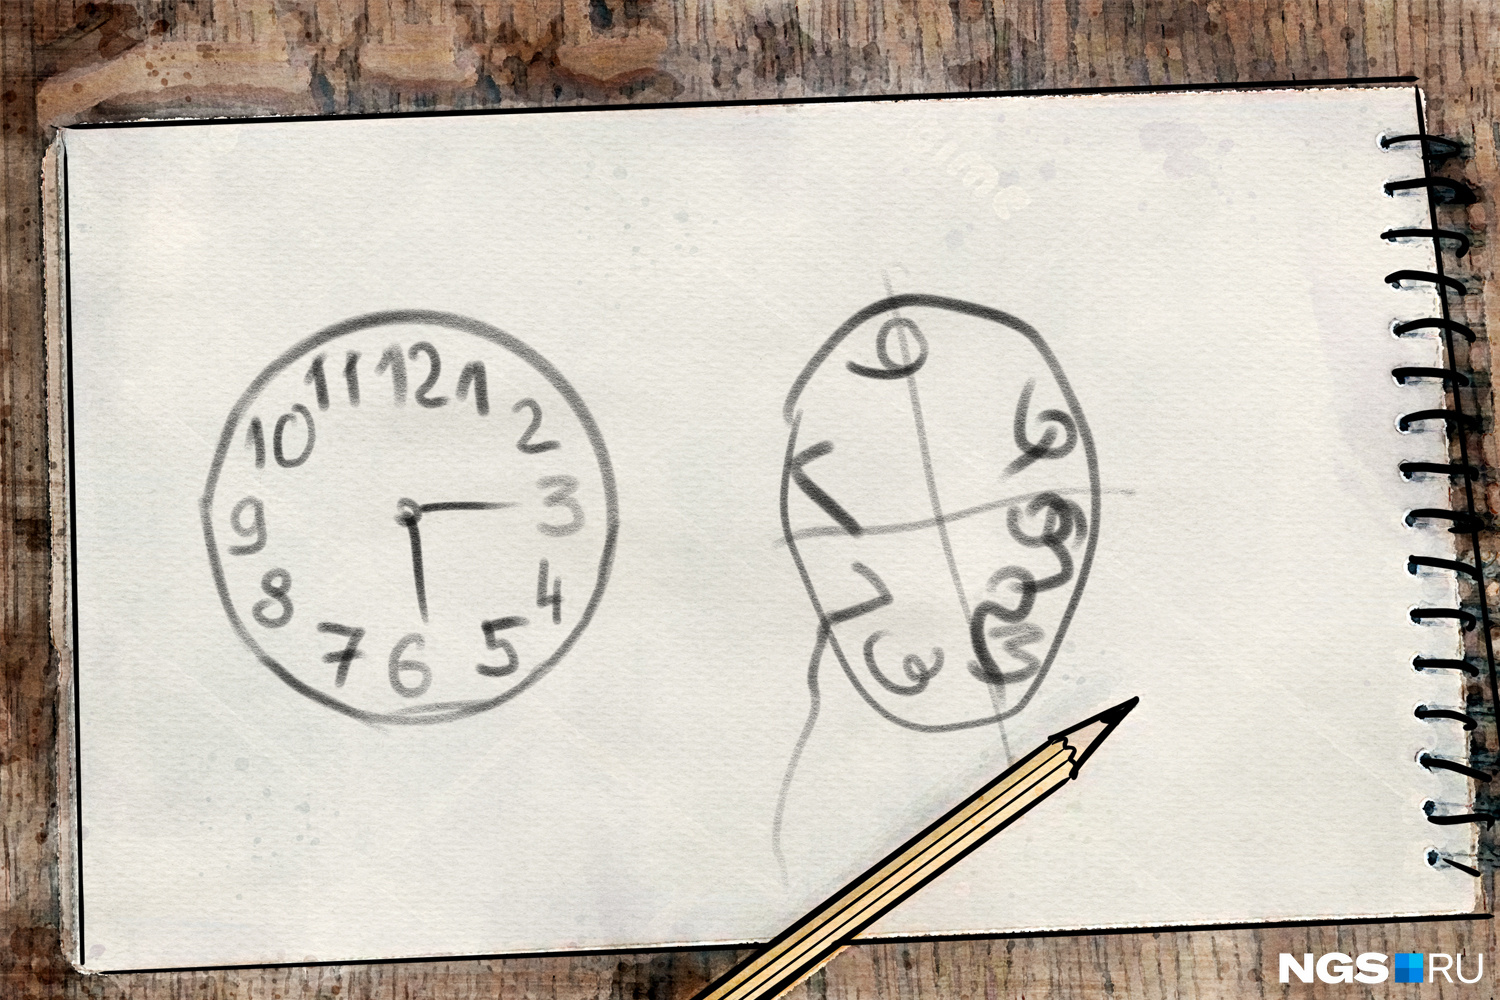 «Рисование часов» — один из простейших тестов на определение когнитивных нарушений